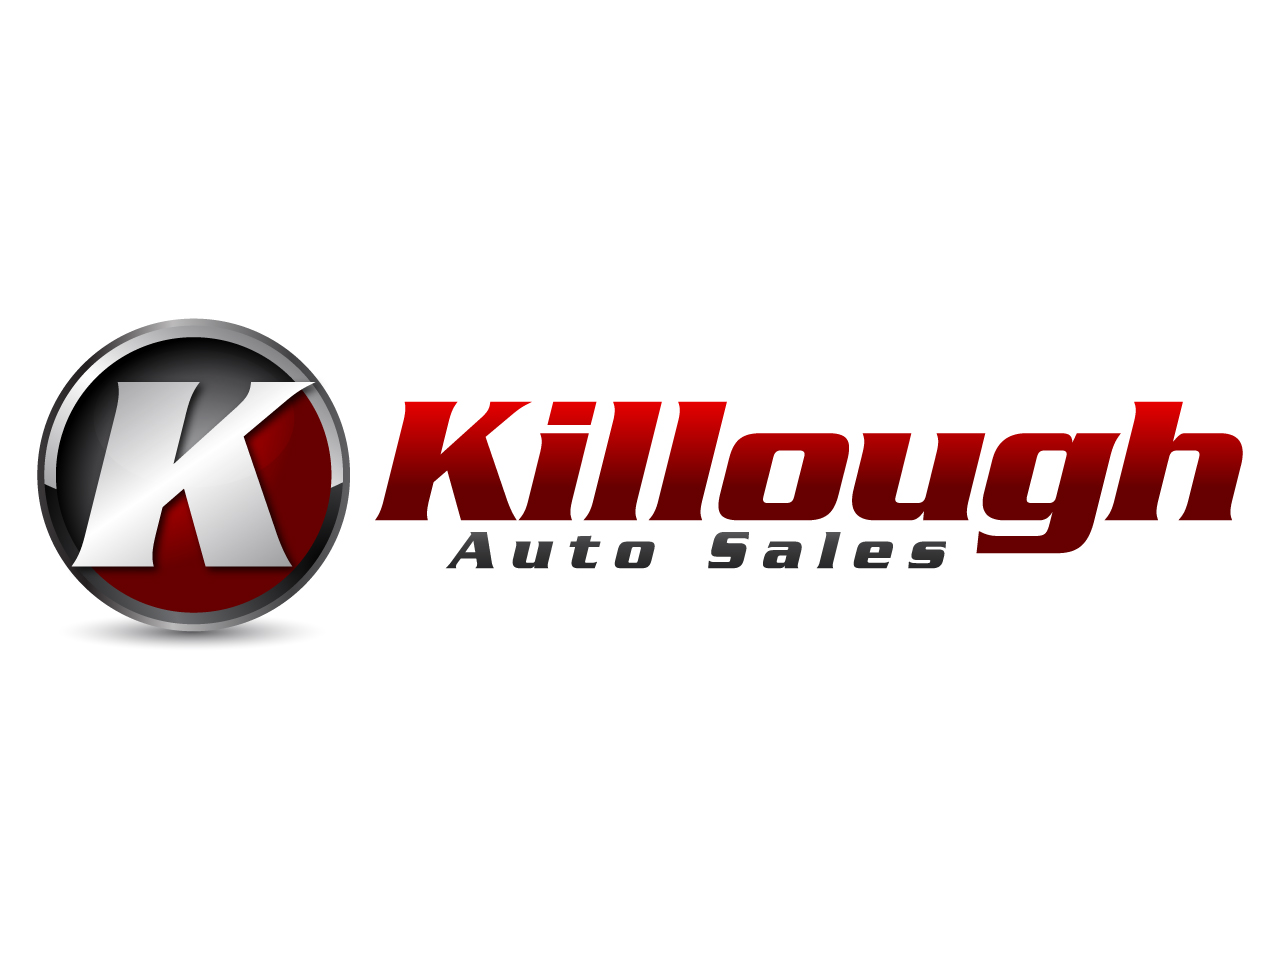 Killough Auto Sales